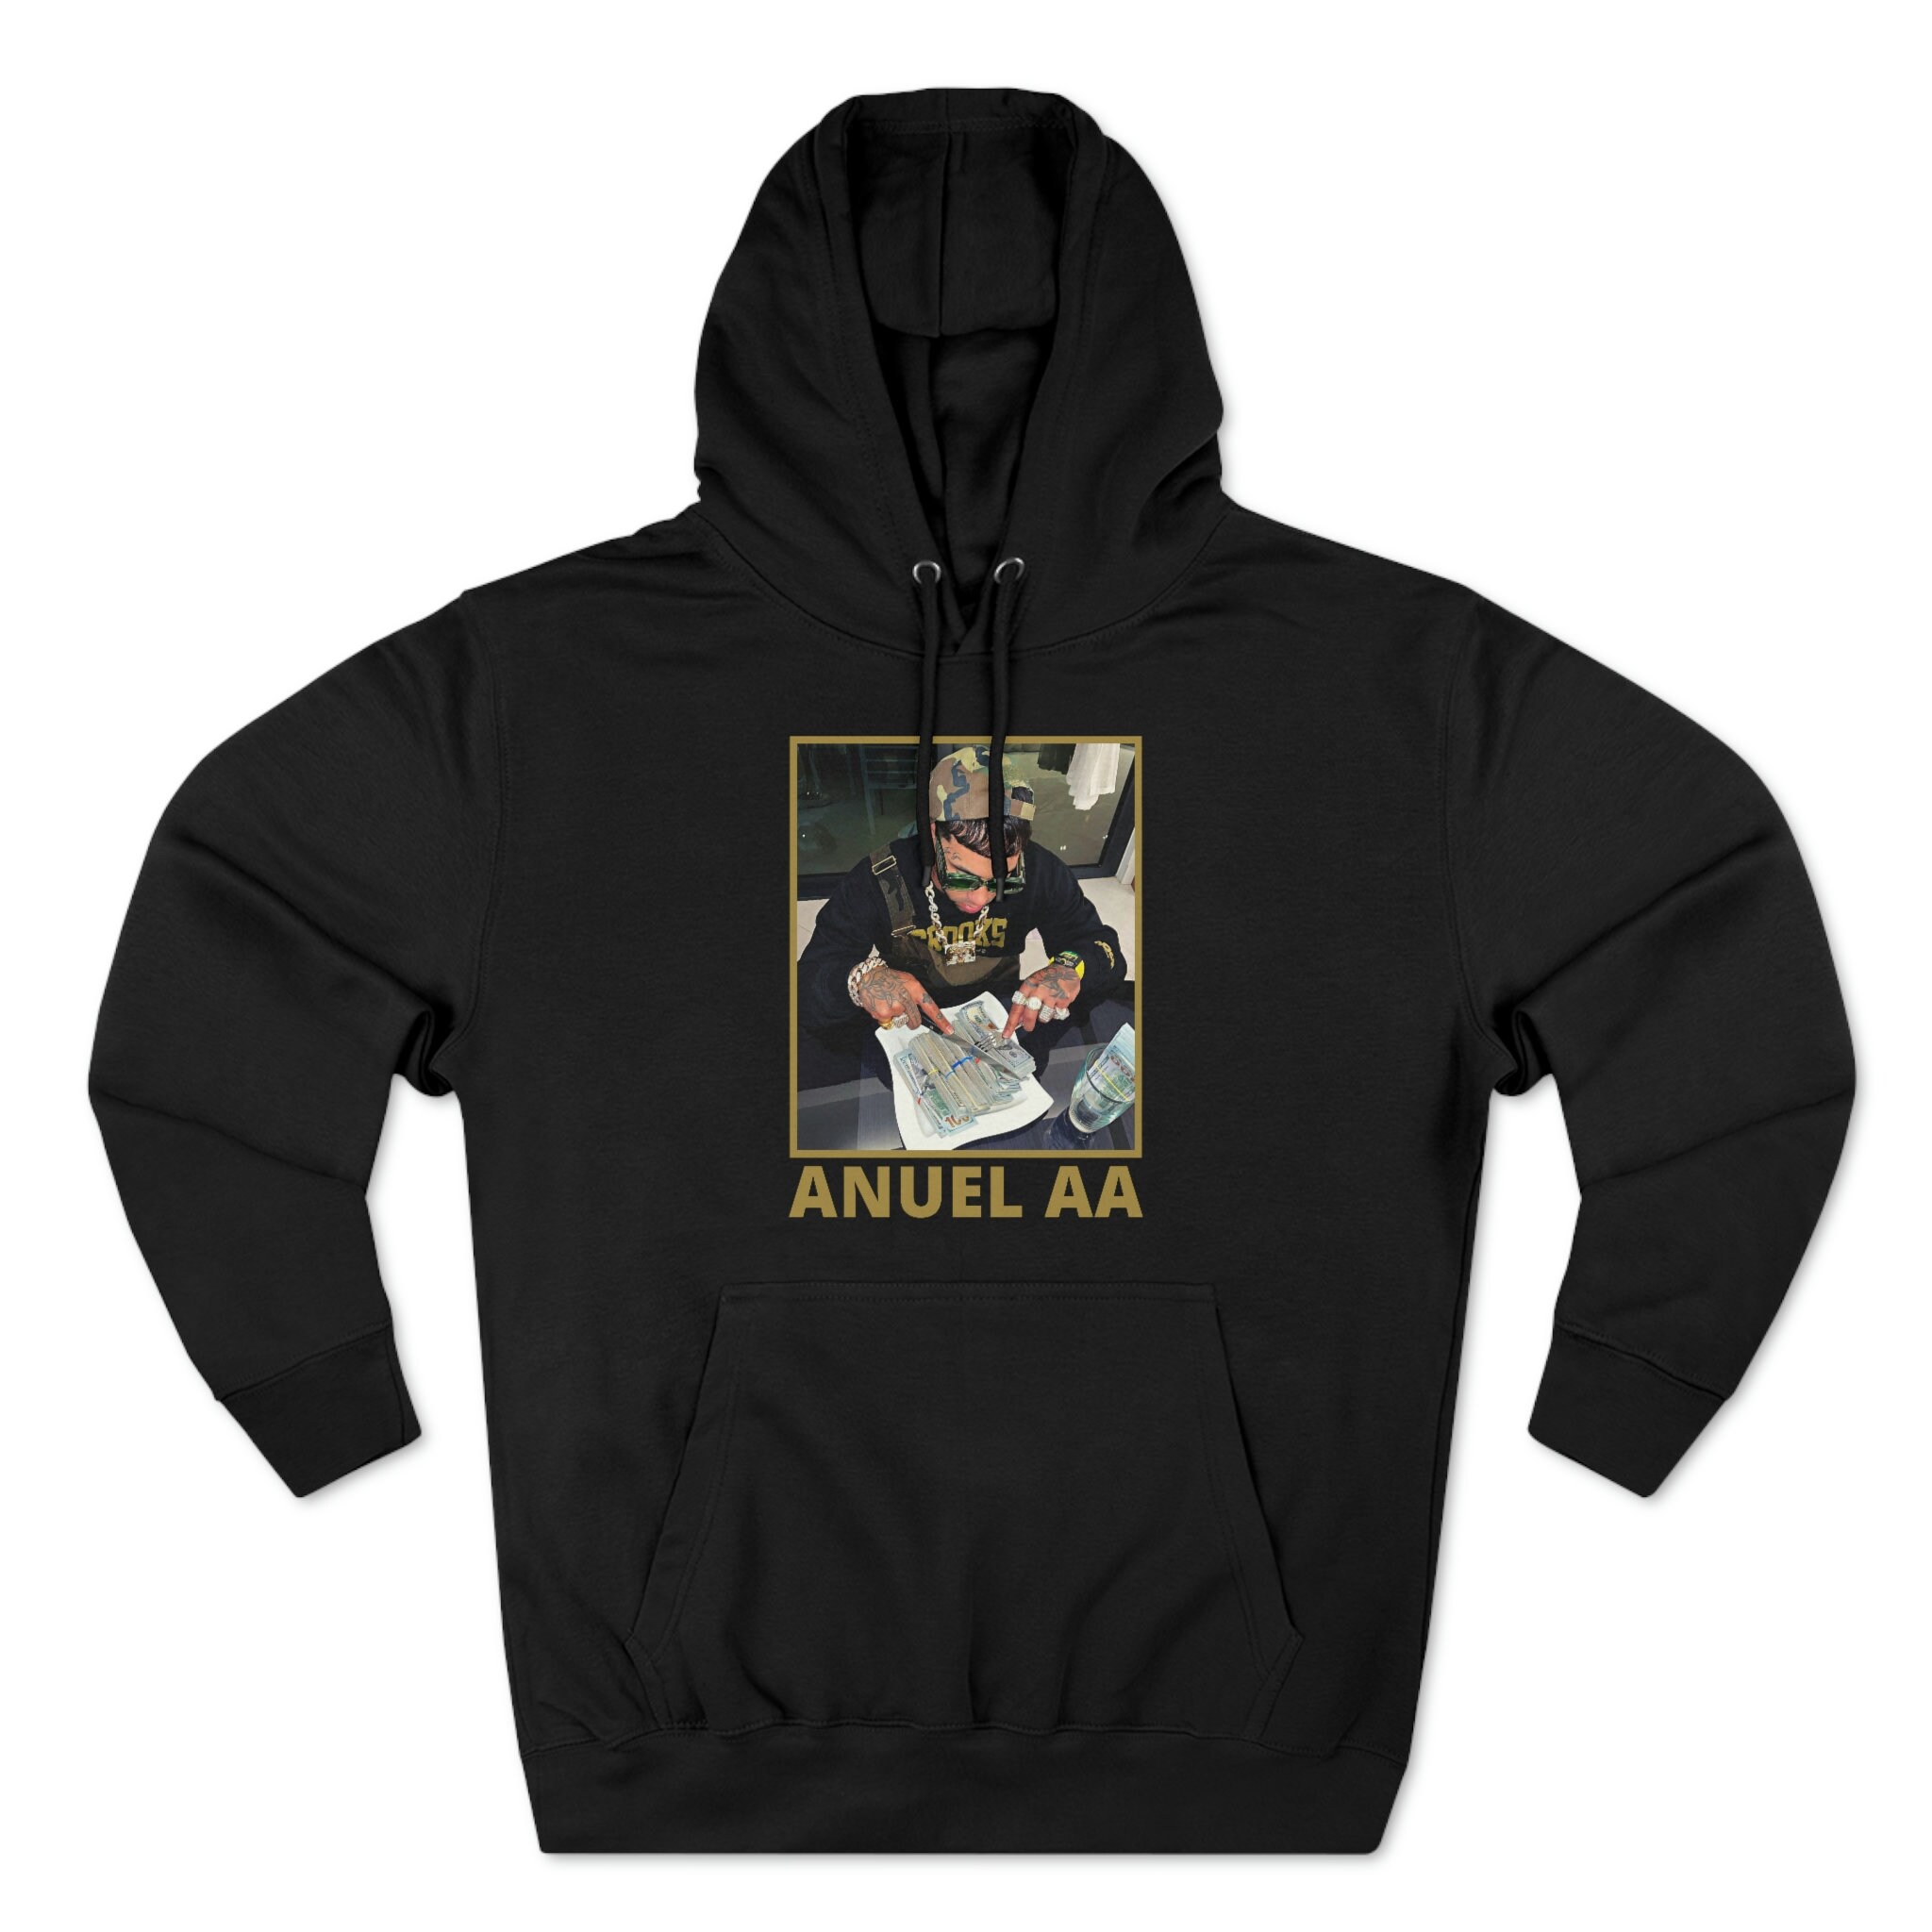 Anuel AA Dinero Hoodie, Anuel AA Hoodie, Anuel Hoodie, Reggaeton Hoodie,  Rap Sweatshirt, Gift for Him, Gift for Her, Anuel AA, Unisex 